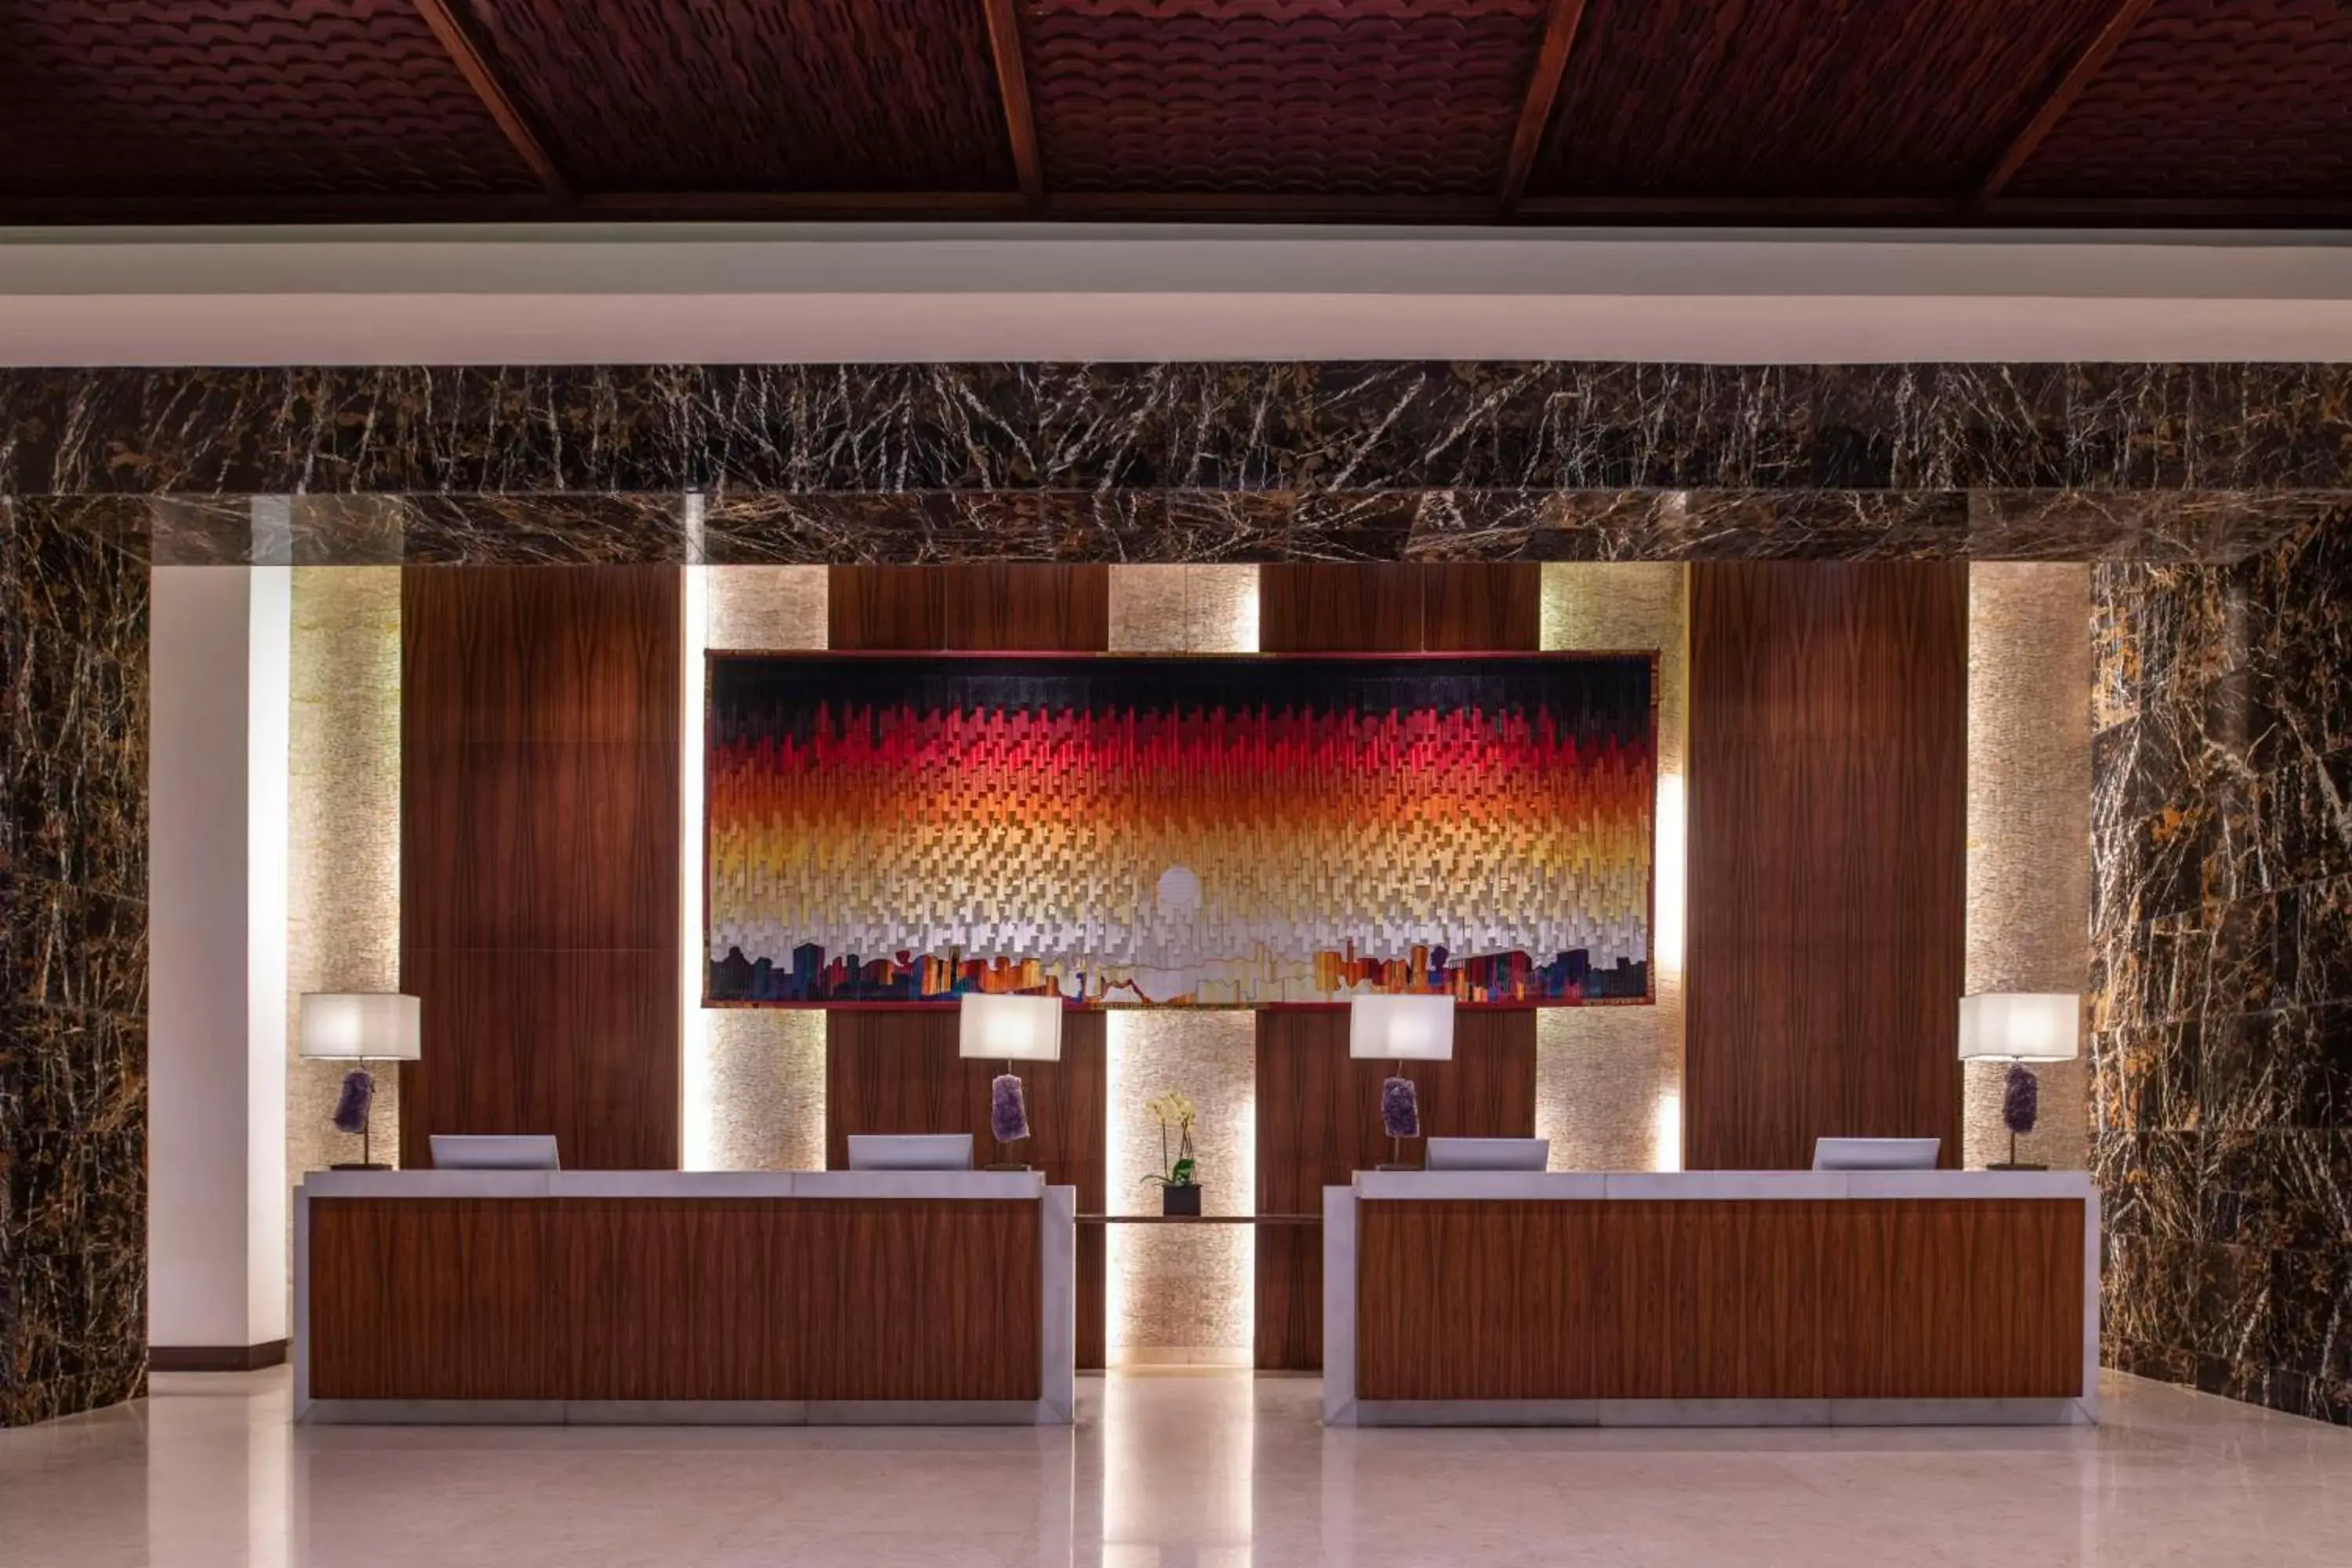 Lobby or reception, Lobby/Reception in Kempinski Hotel Gold Coast City